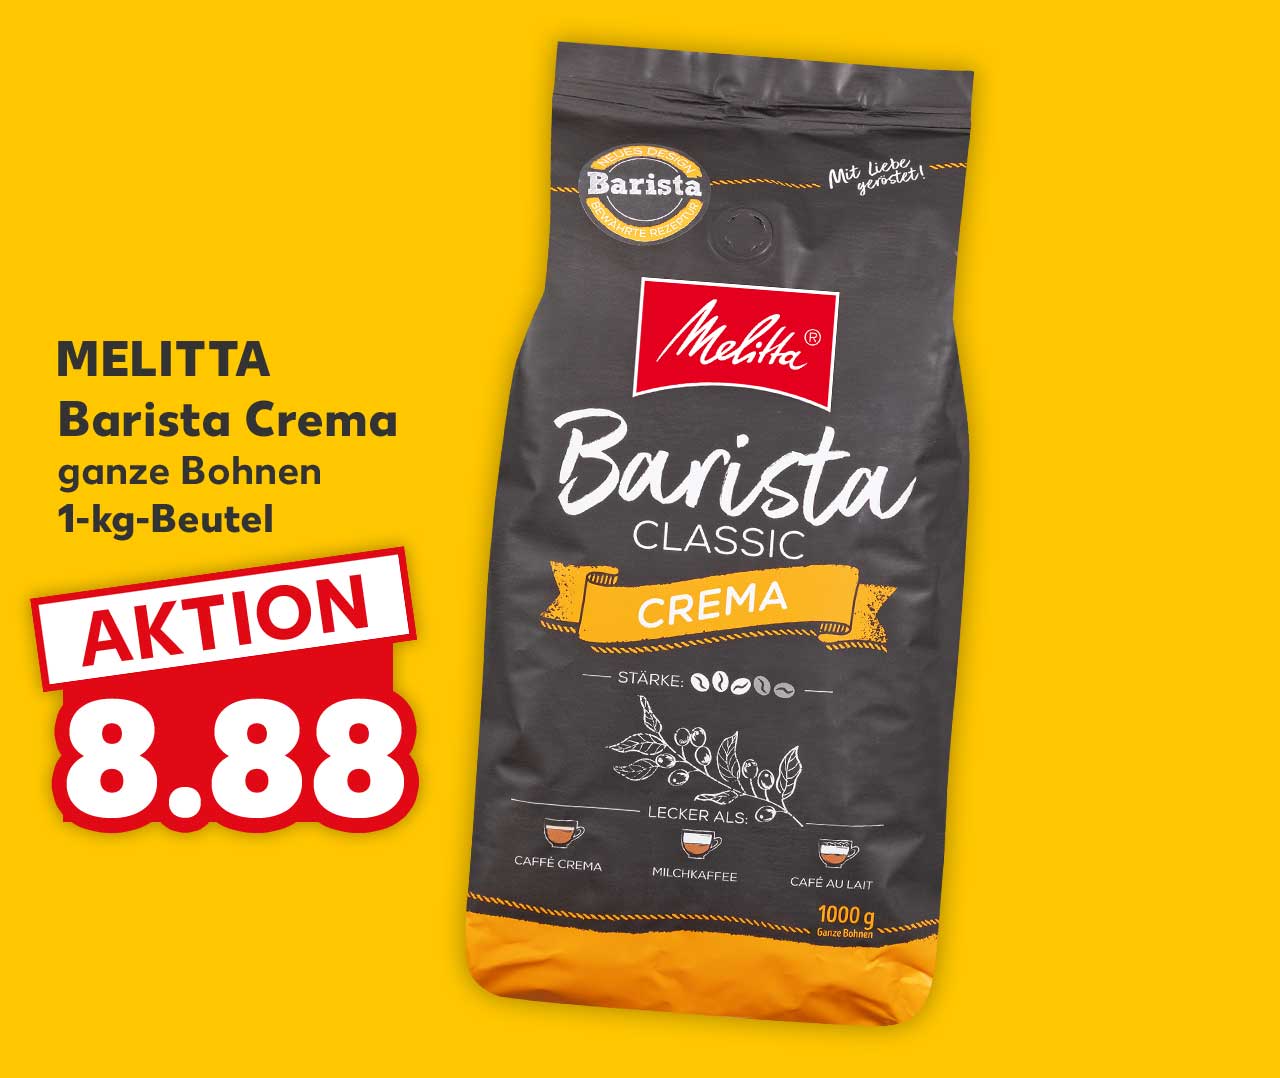 MELITTA Barista Crema, ganze Bohnen, 1-kg-Beutel für 8.88 Euro